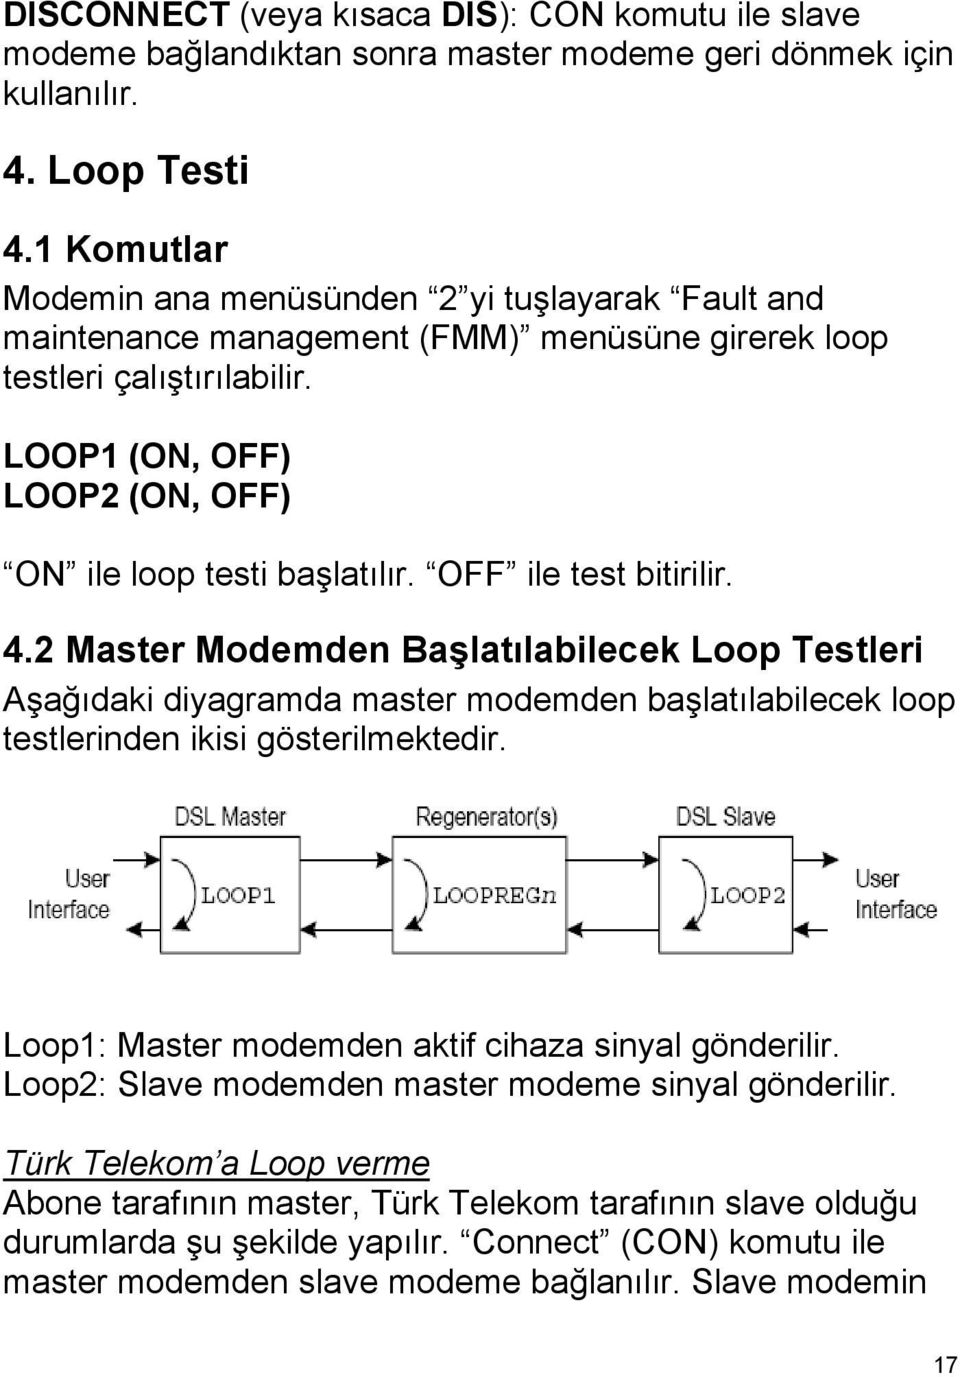 OFF ile test bitirilir. 4.2 Master Modemden Başlatılabilecek Loop Testleri Aşağıdaki diyagramda master modemden başlatılabilecek loop testlerinden ikisi gösterilmektedir.